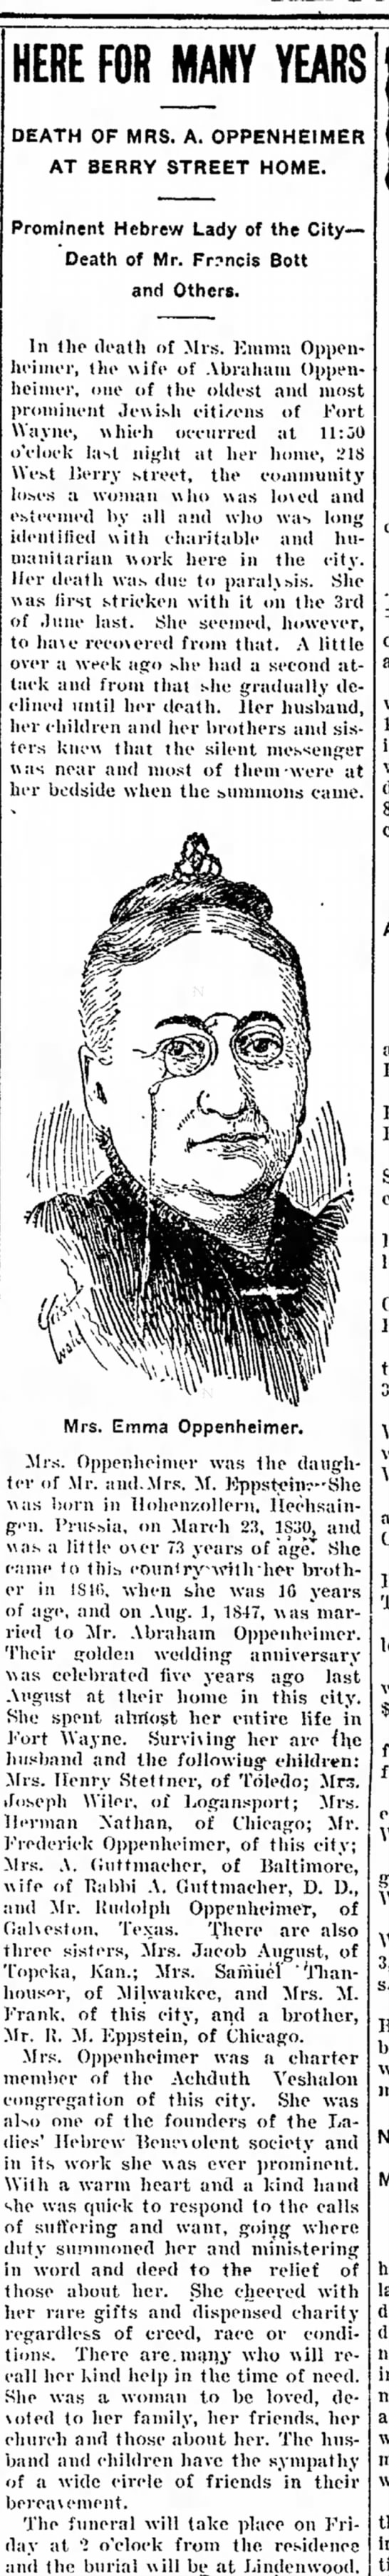 Mrs. Emma Oppenheimer obituary Fort Wayne News